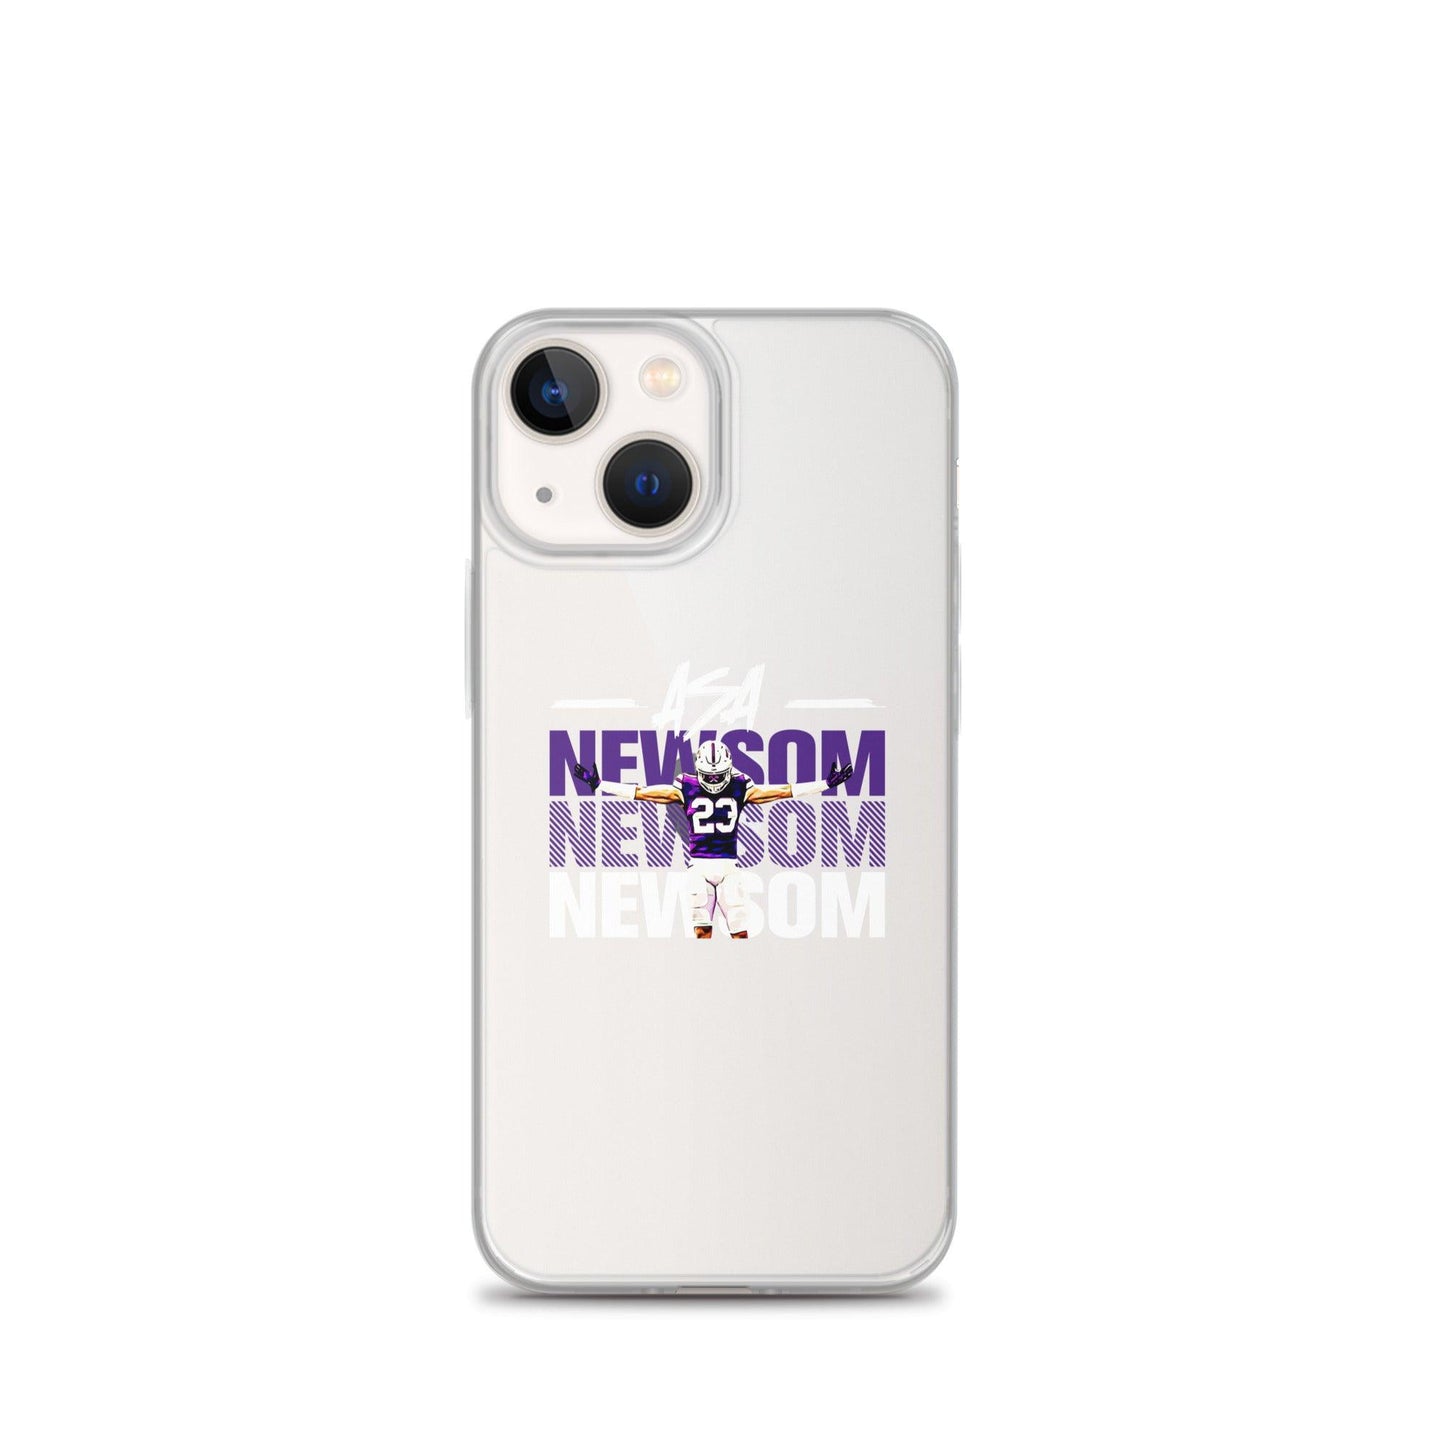 Asa Newsom "Gameday" iPhone® - Fan Arch